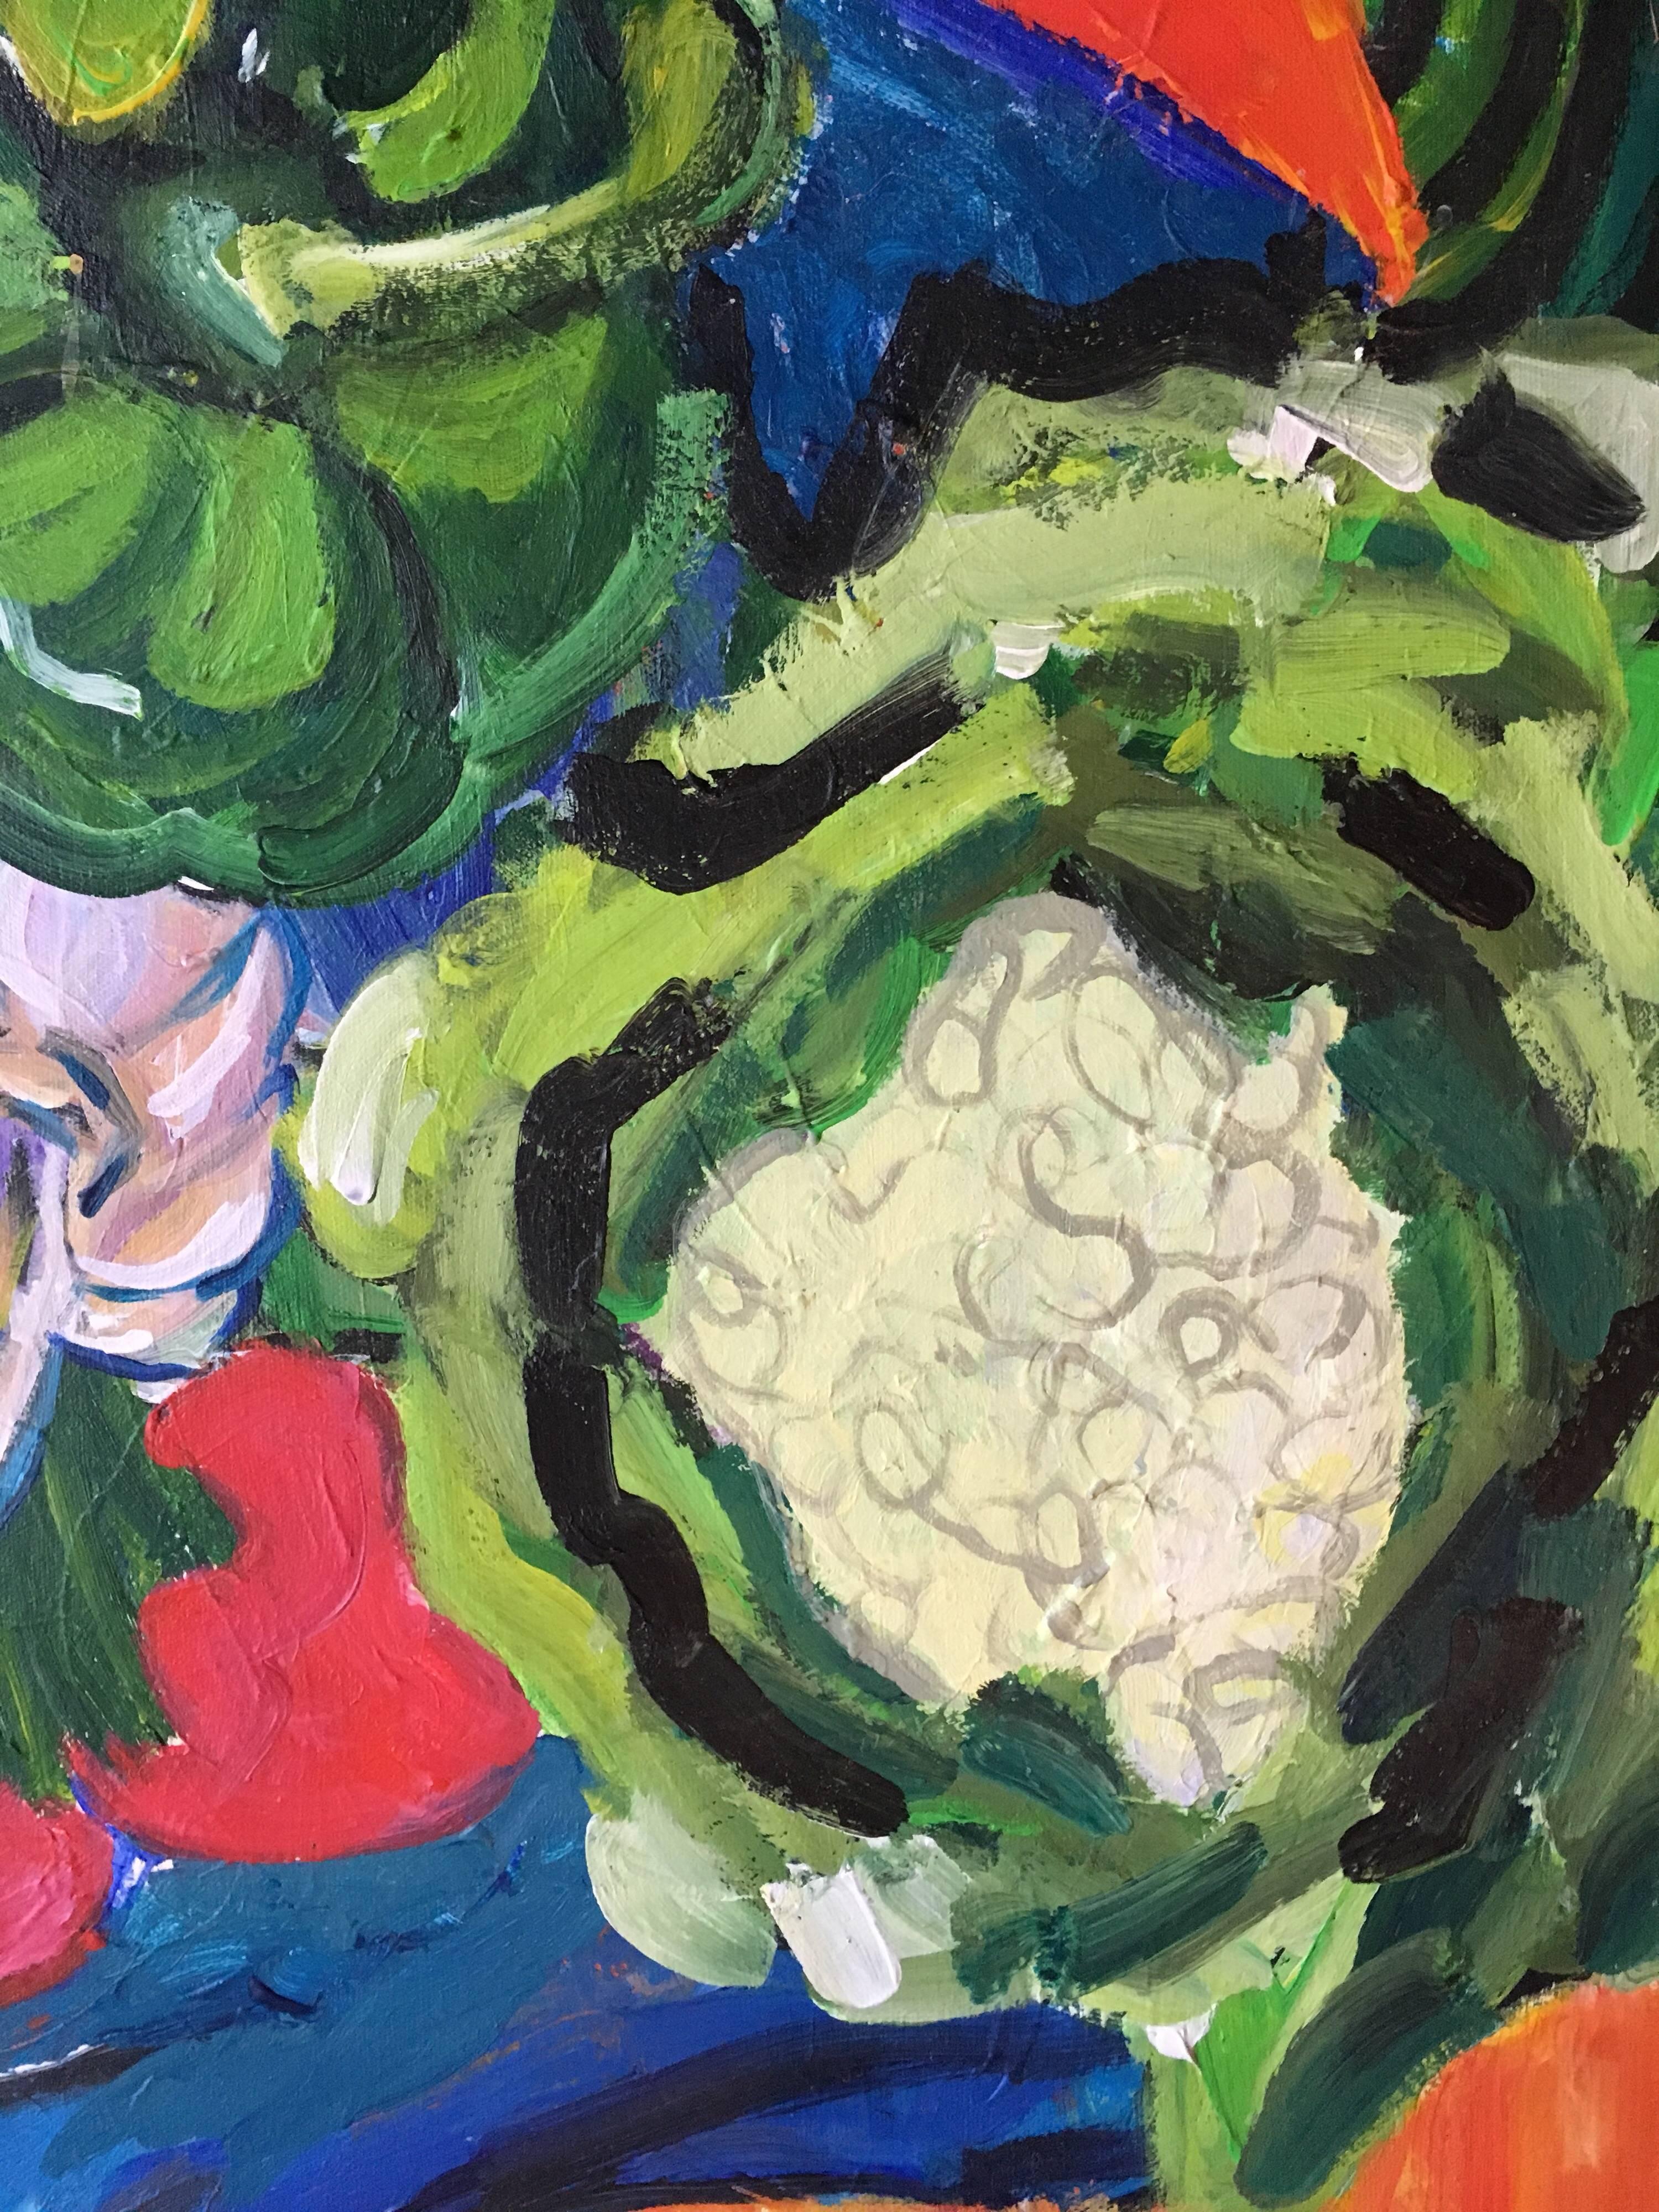 Légumes du jardin, Nature morte, Couleurs vives, Artiste britannique
par Pamela Cawley, Britannique 20ème siècle
peinture à l'huile sur toile, non encadrée

toile : 24 x 24 pouces 

Superbe peinture à l'huile impressionniste originale de l'artiste